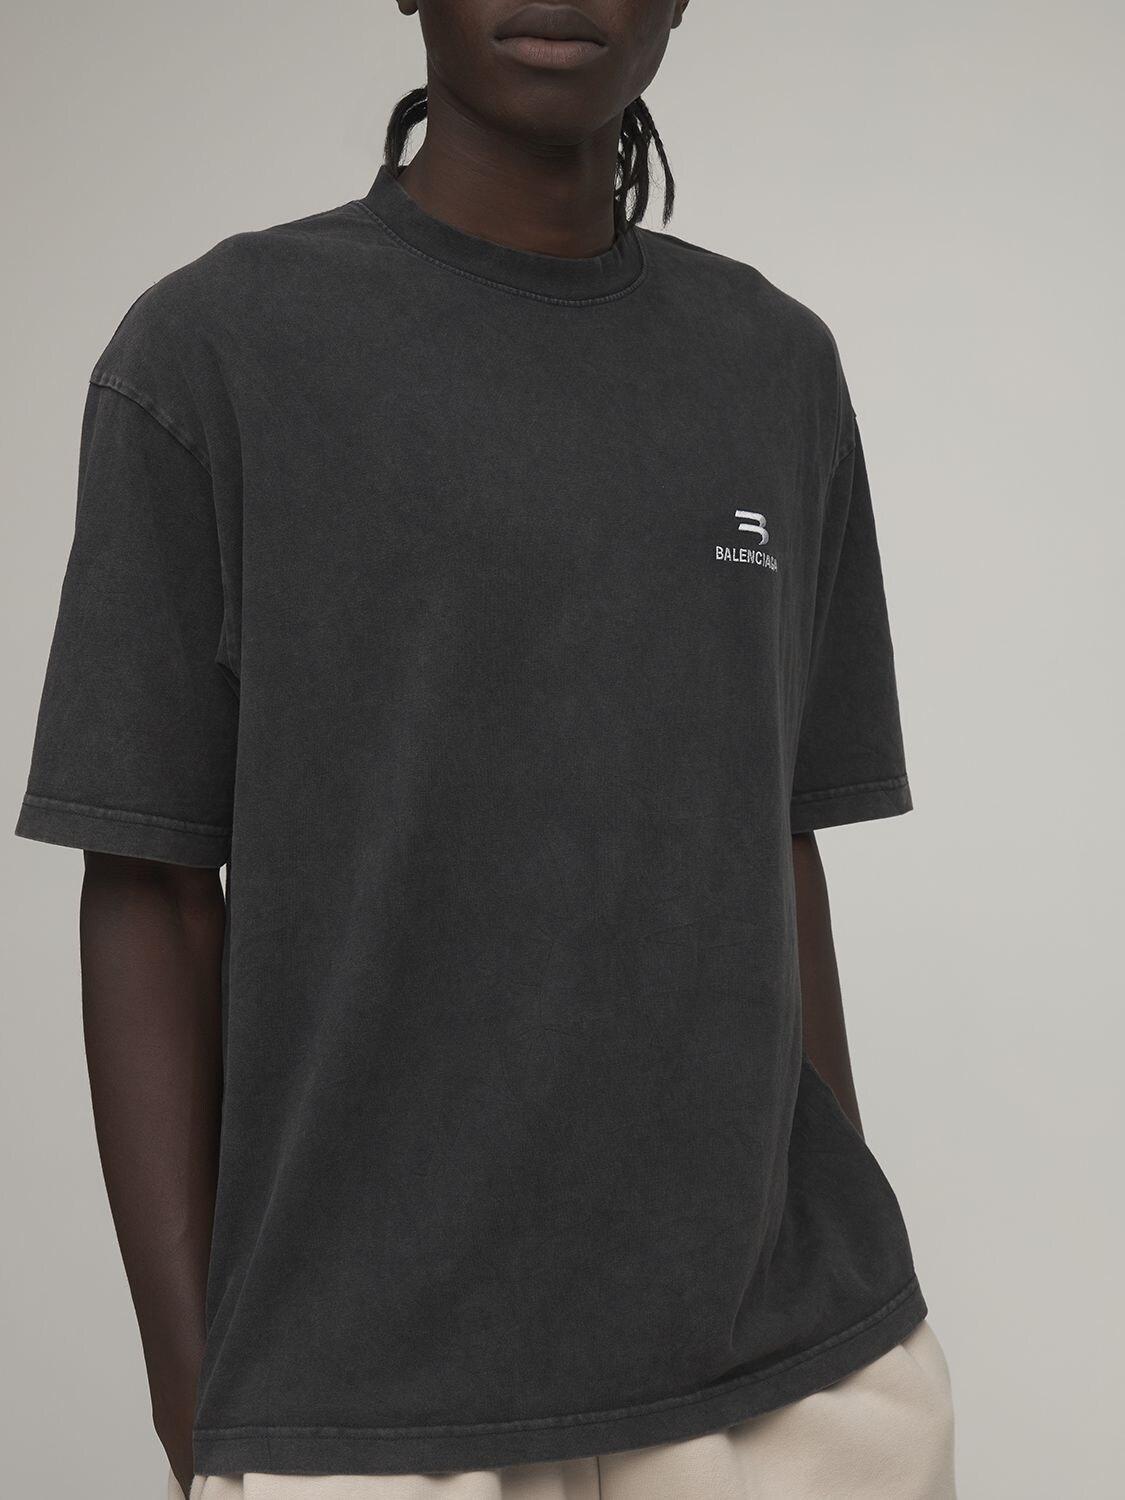 Pure Cotton Balenciaga T-Shirt for Men - Black - KDB Deals